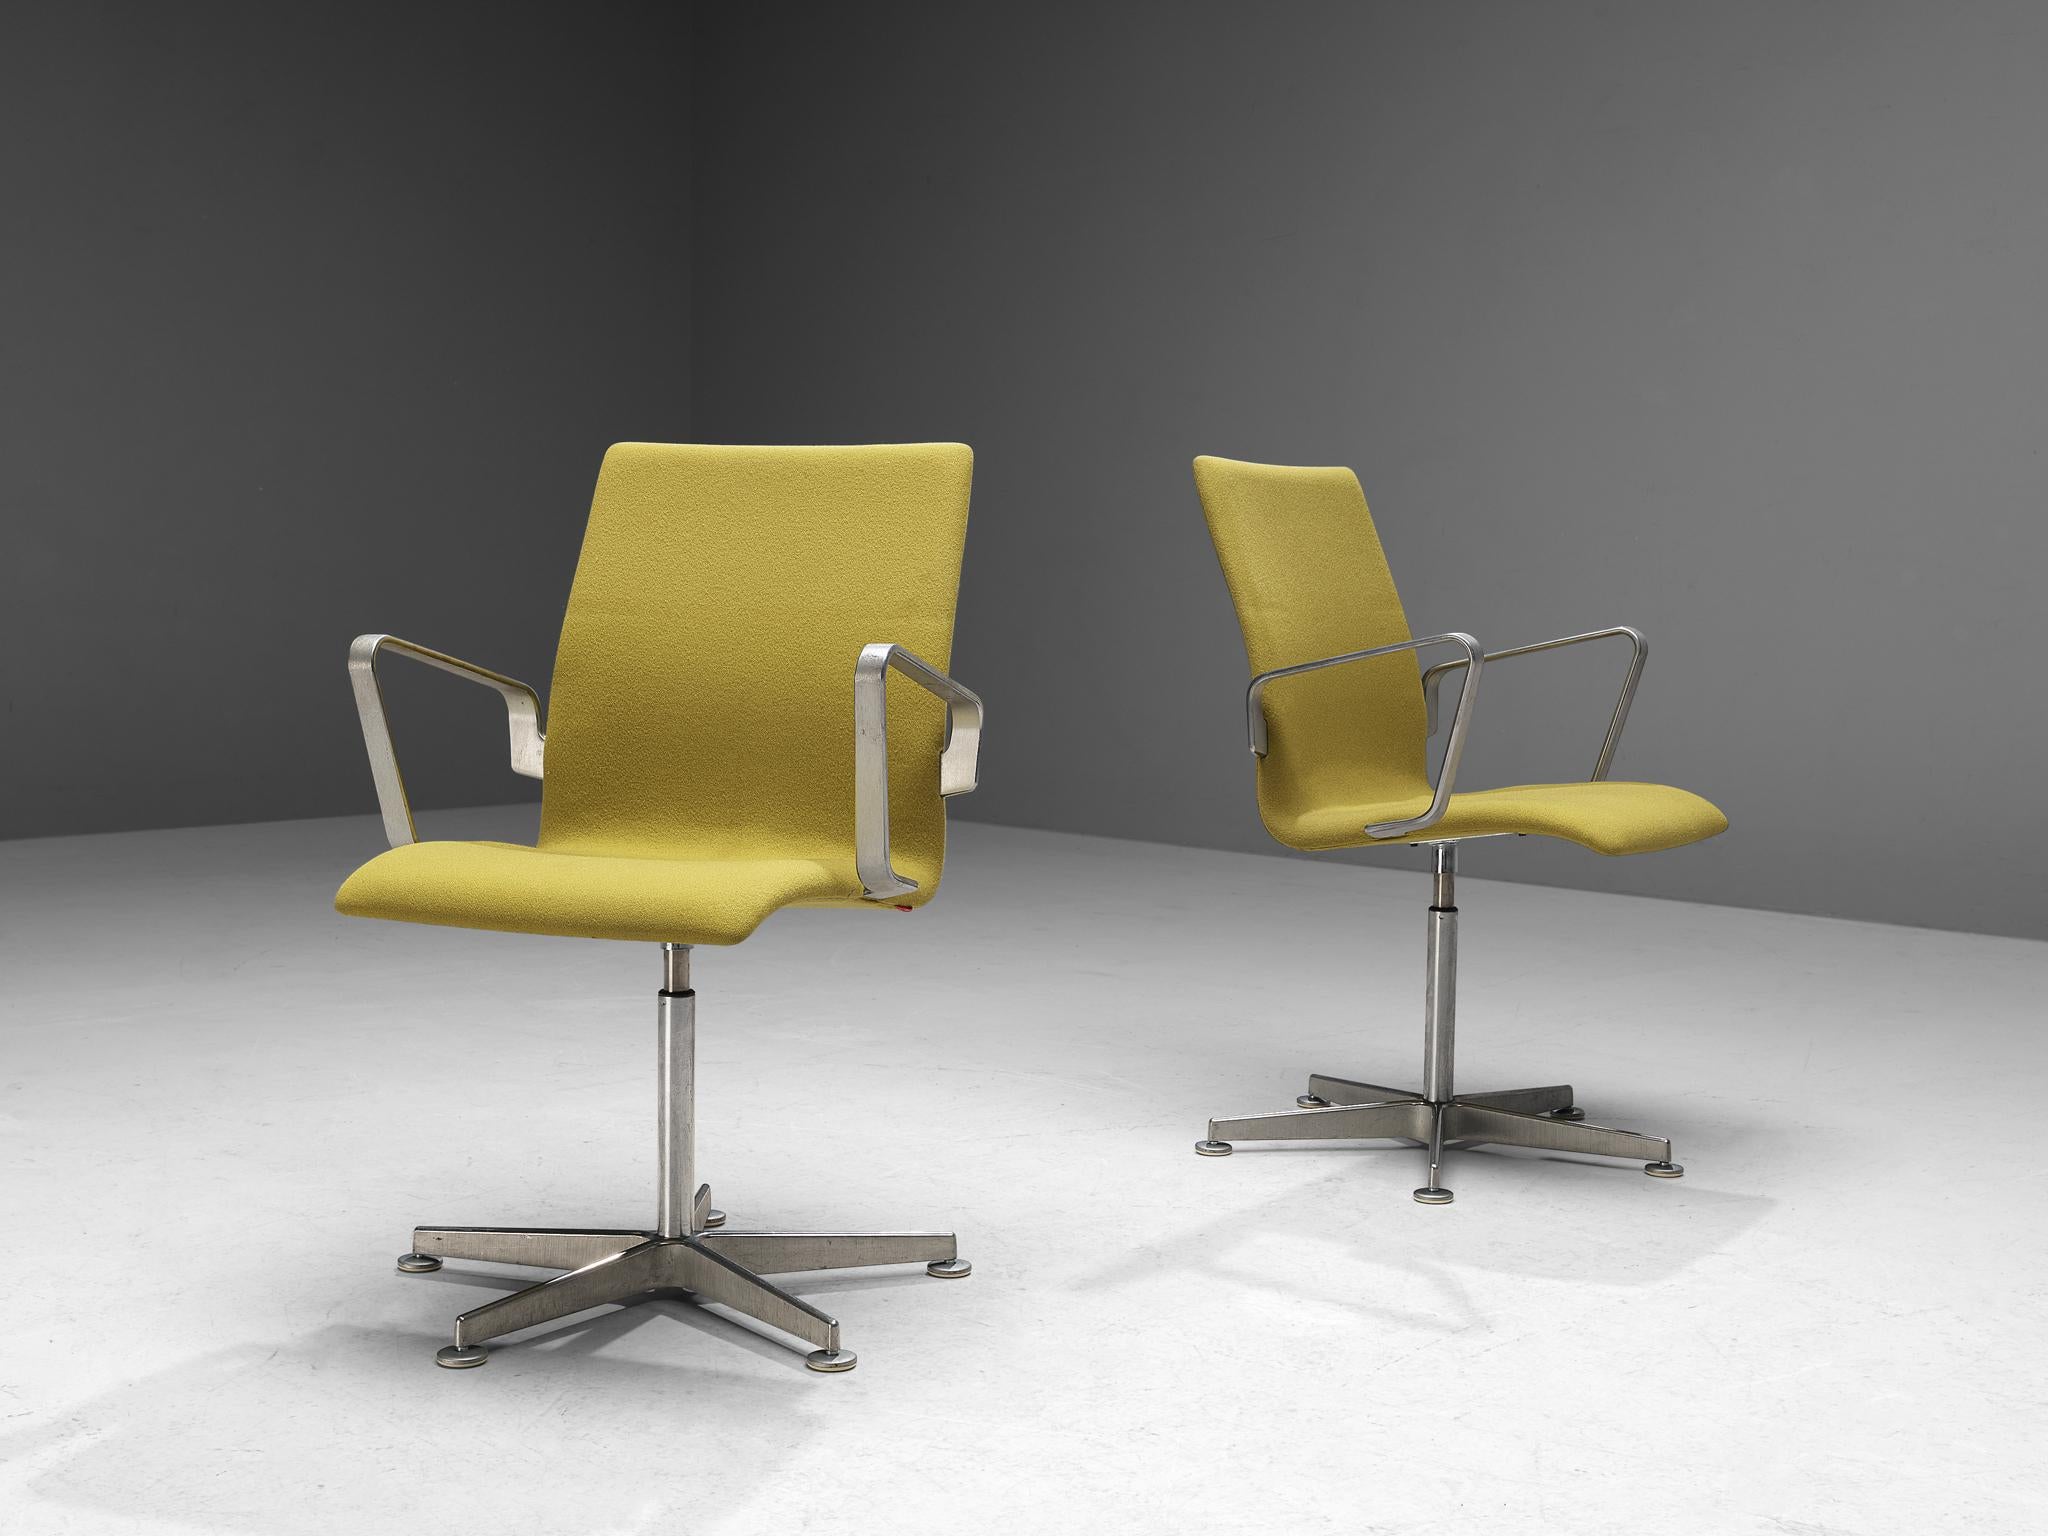 Arne Jacobsen pour Fritz Hansen, ensemble de huit chaises 'Oxford', métal, tissu jaune, Danemark, design 1965.

Ces fauteuils de bureau classiques sont dotés d'un dossier moyennement haut (par opposition aux modèles à dossier bas et très haut),